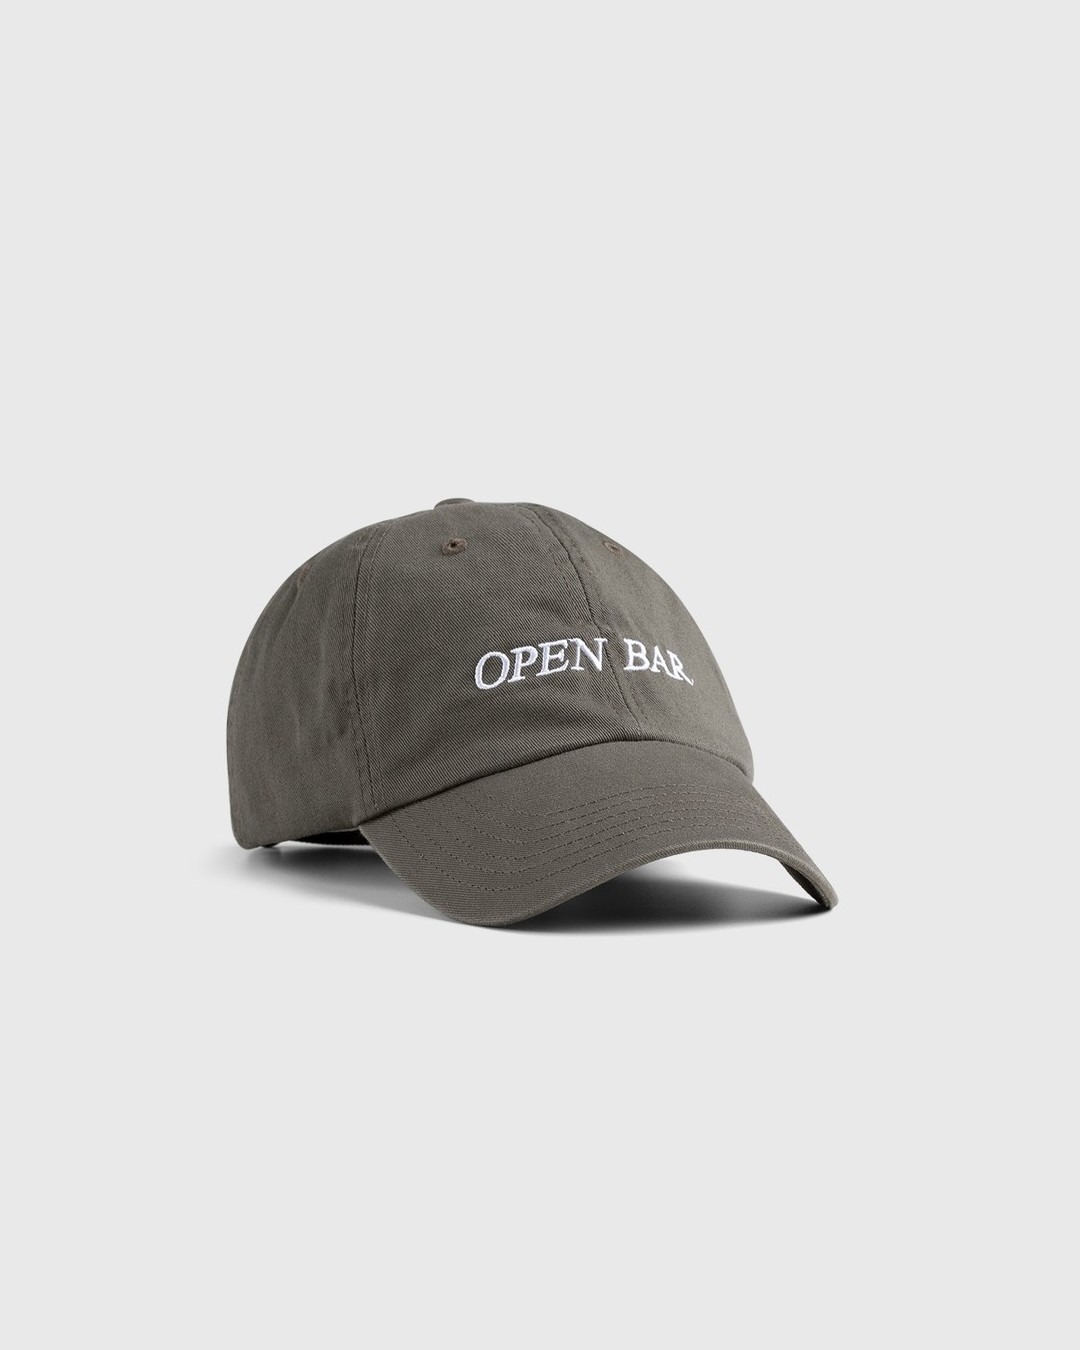 HO HO COCO – Open Bar Cap Grey  - Caps - Grey - Image 1